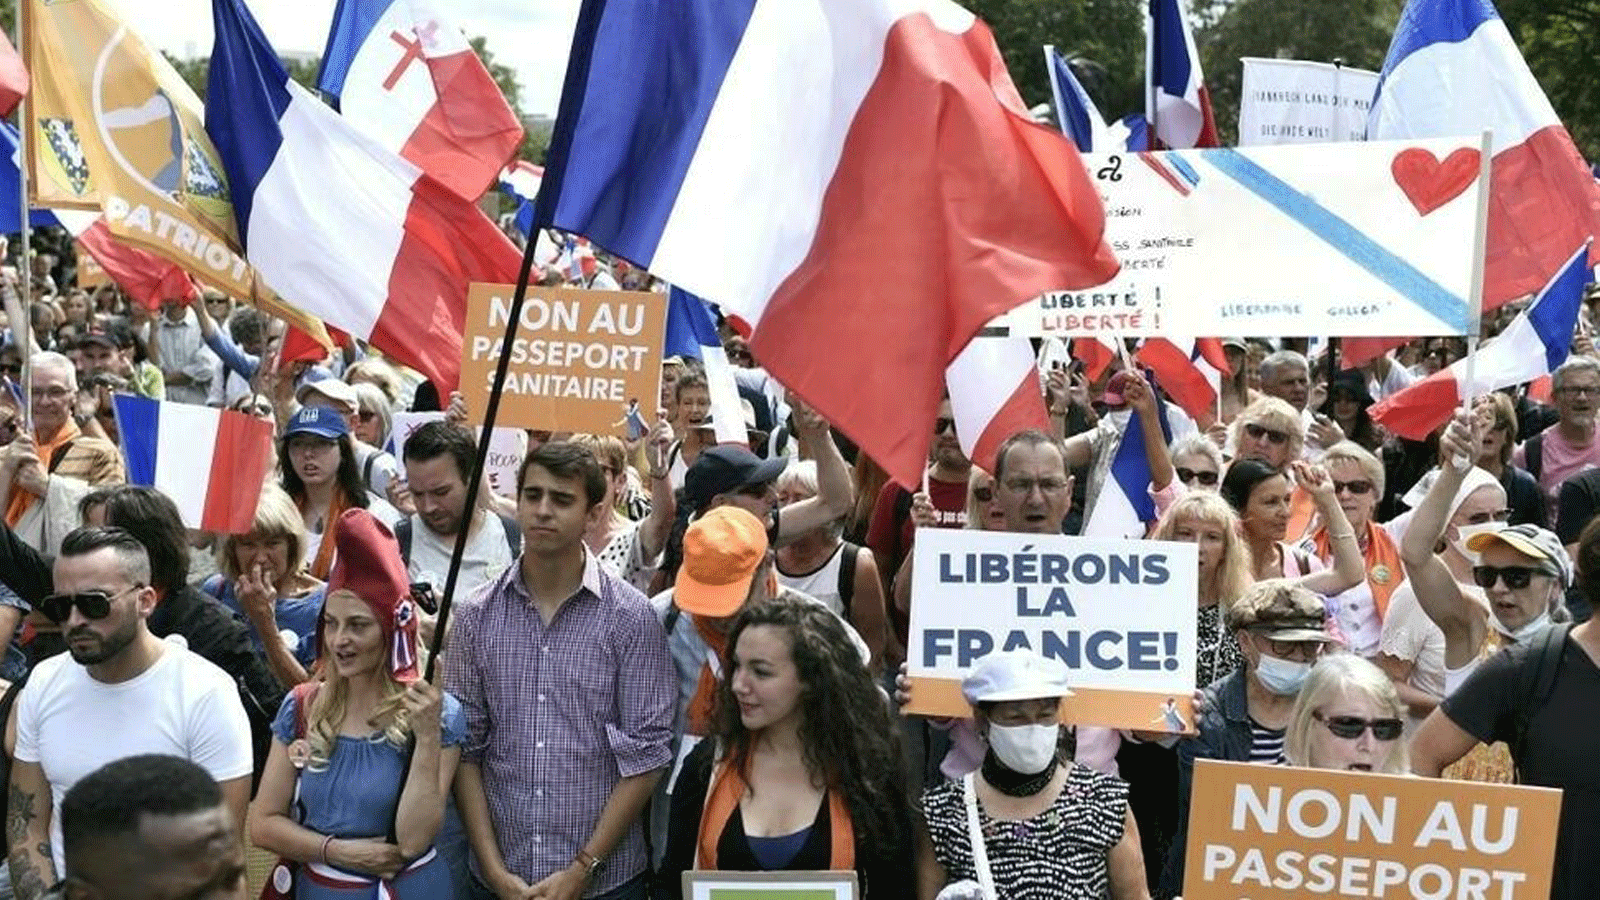  متظاهرون يلوحون بالأعلام الفرنسية ويحملون لافتات كتب عليها 